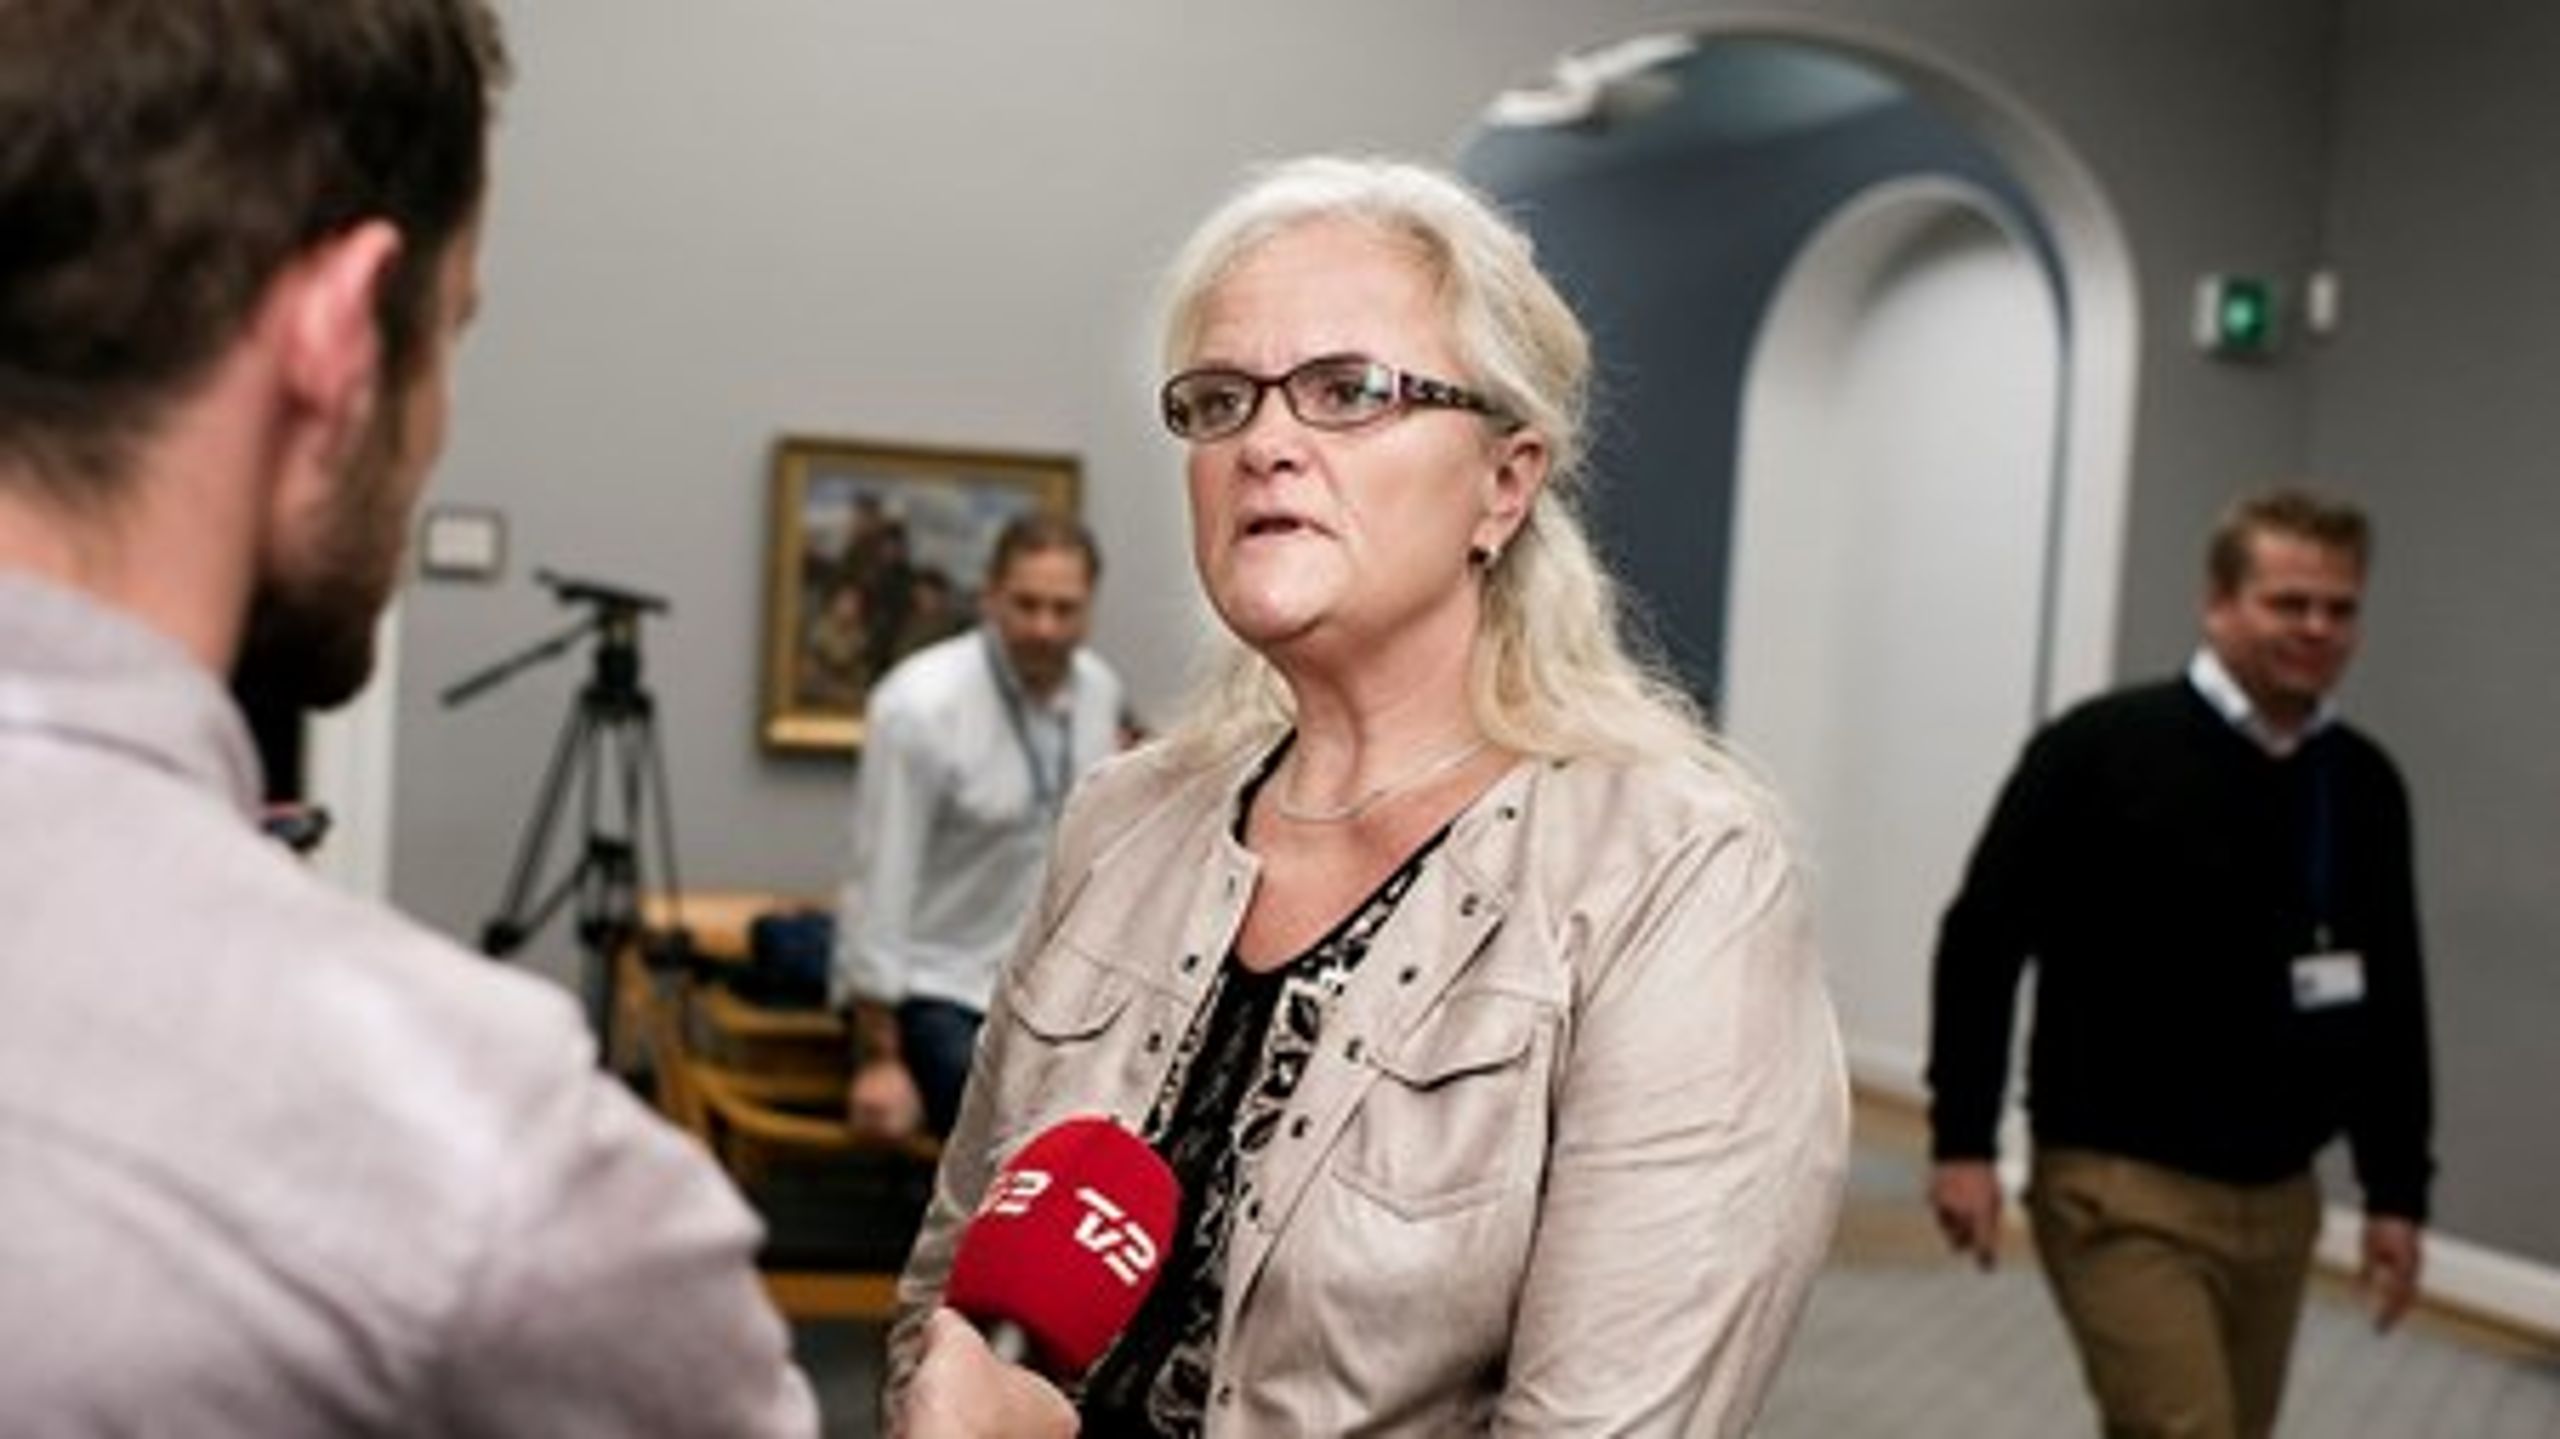 Det er fuldstændig malplaceret, at Dansk Handicap Forbund vil skabe mistillid omkring HPV-vaccinen i bestræbelserne på&nbsp;at få en plads i en arbejdsgruppe, mener Dansk Folkepartis sundhedsordfører, Liselott Blixt.